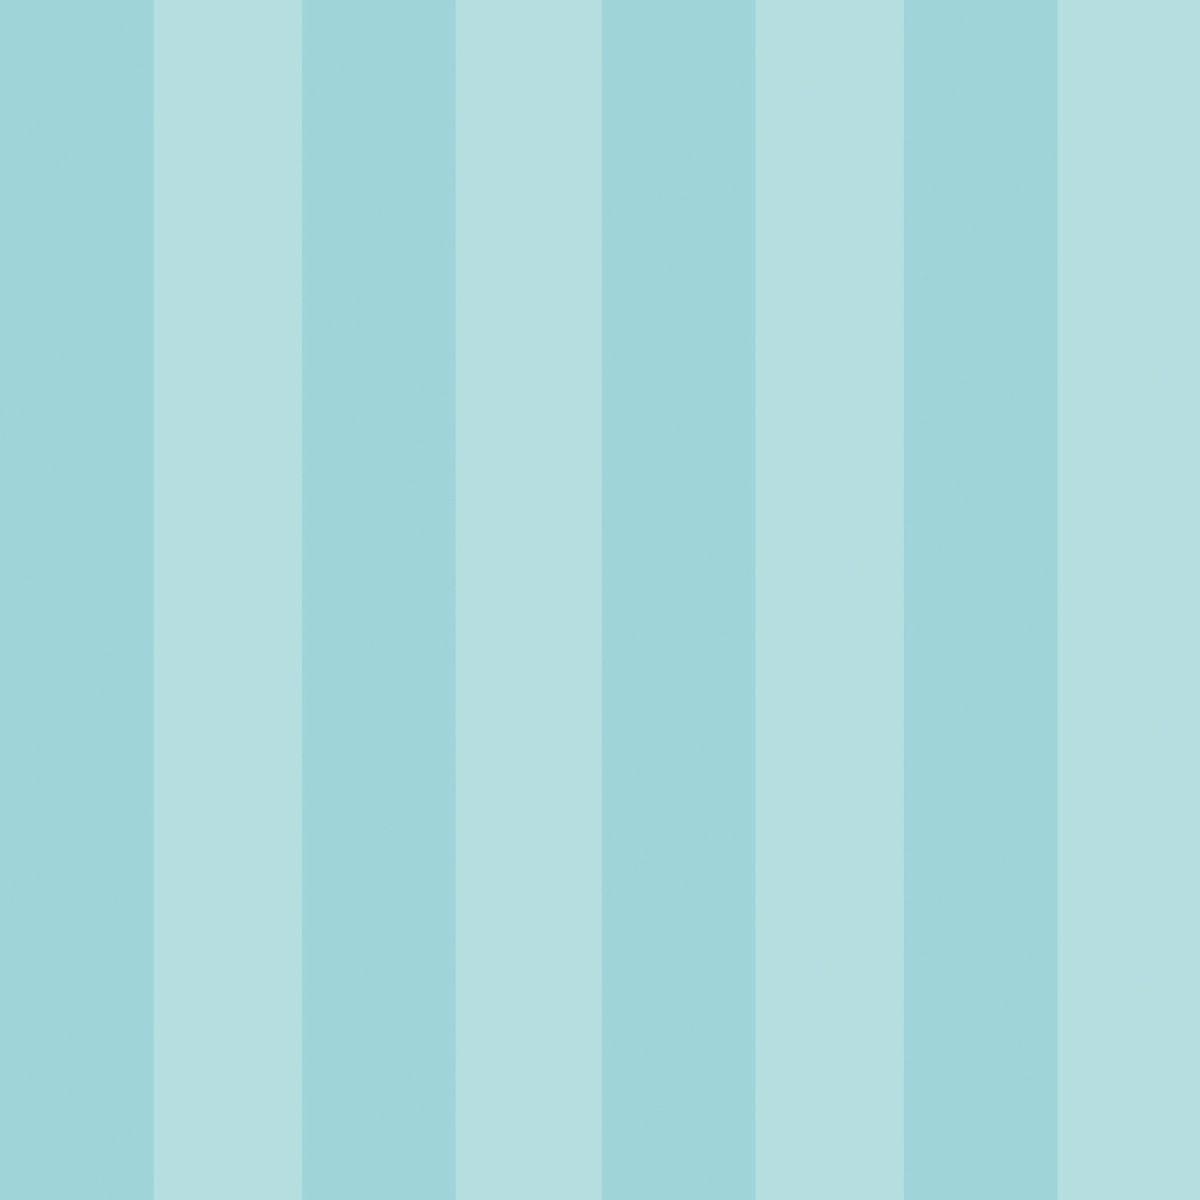 Wallpaper For > Light Blue Stripes Wallpaper